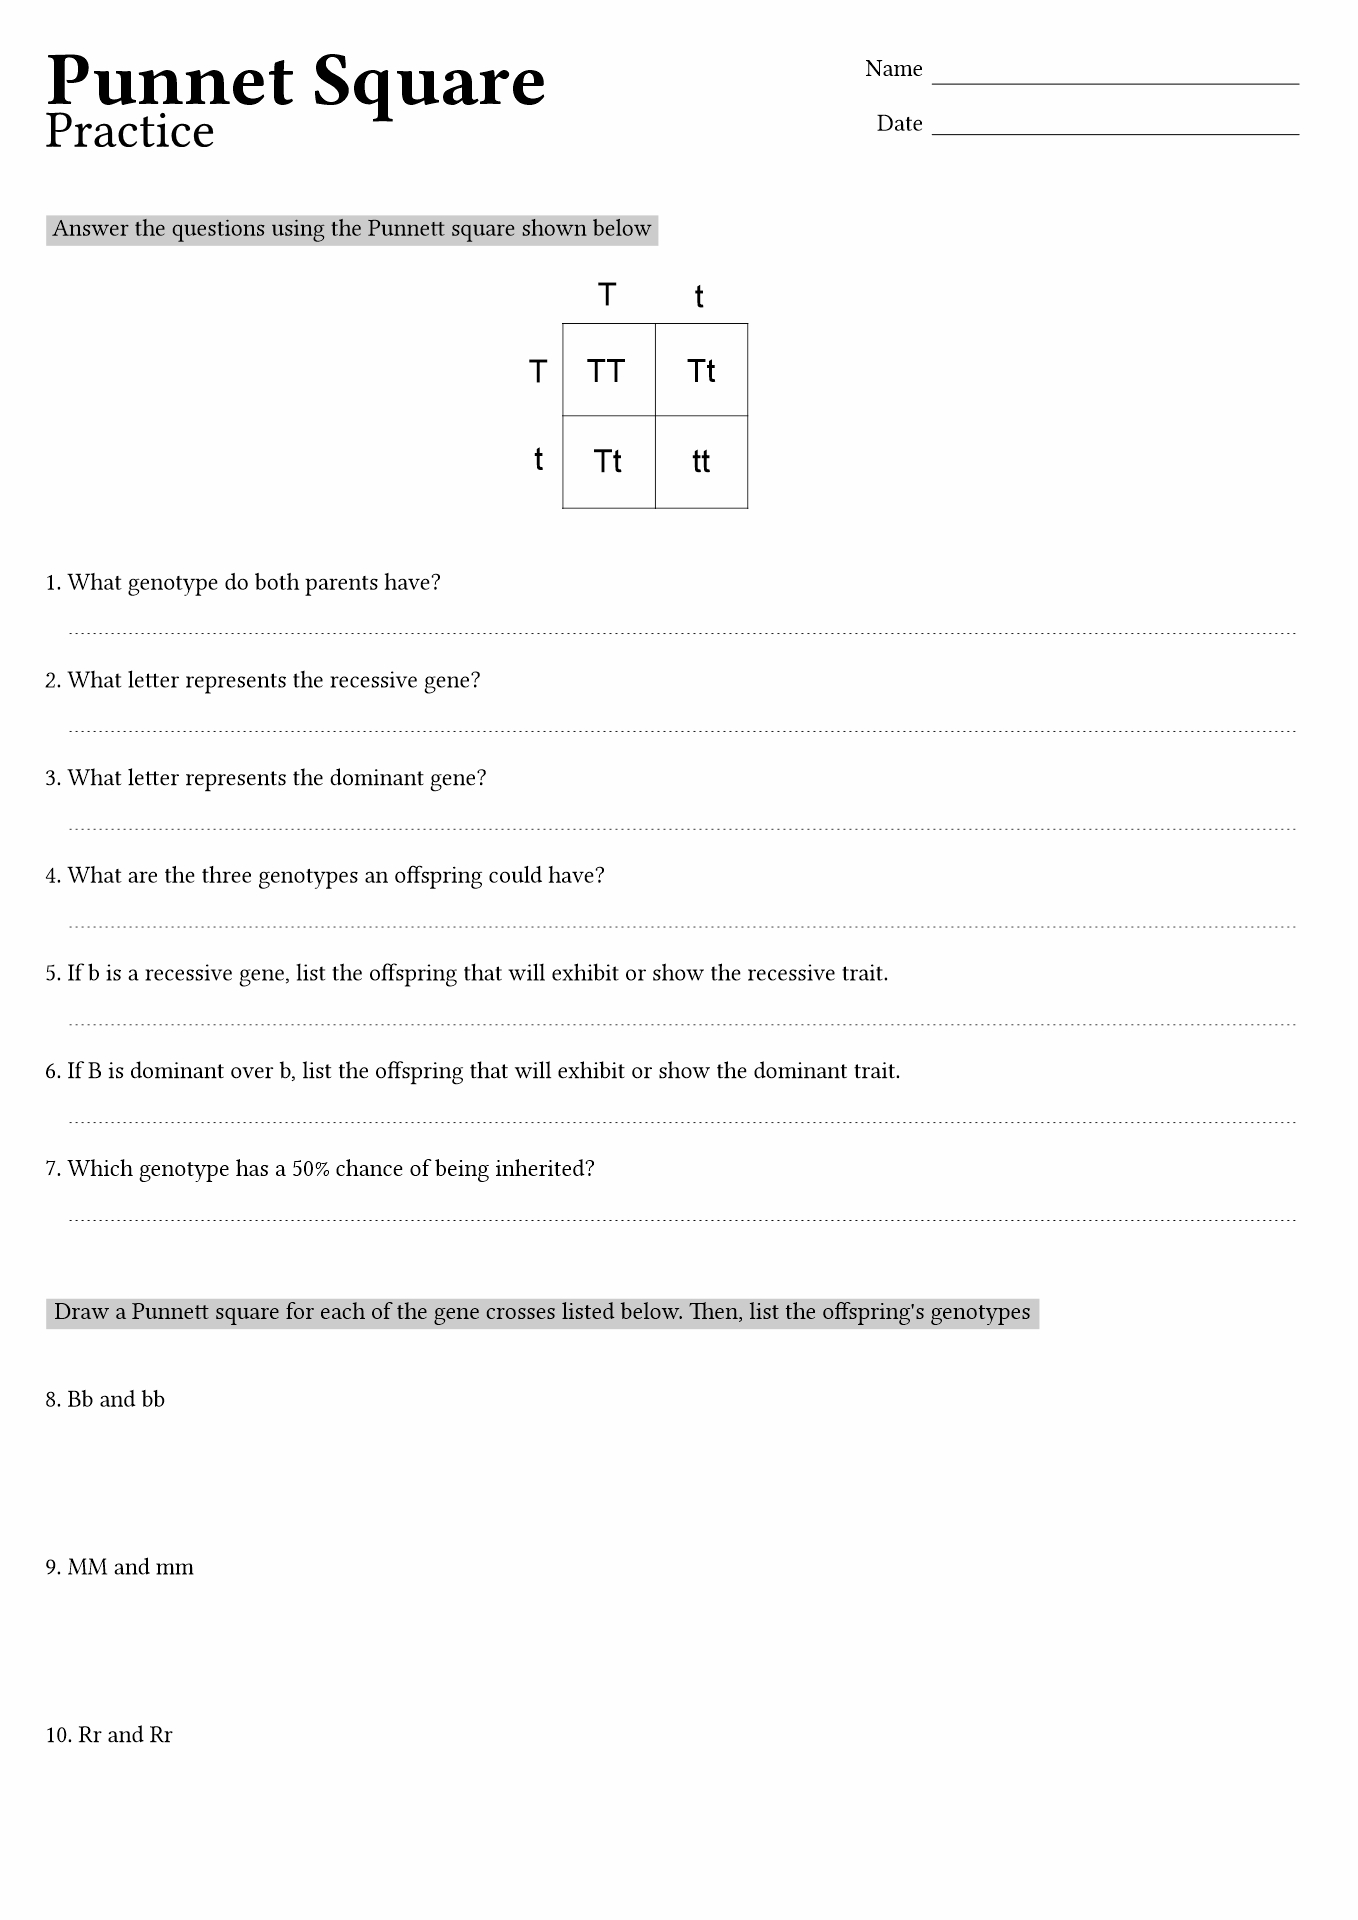 15 Best Images of Punnett Square Worksheet Answer Key  Punnett Square Worksheet 1 Answer Key 